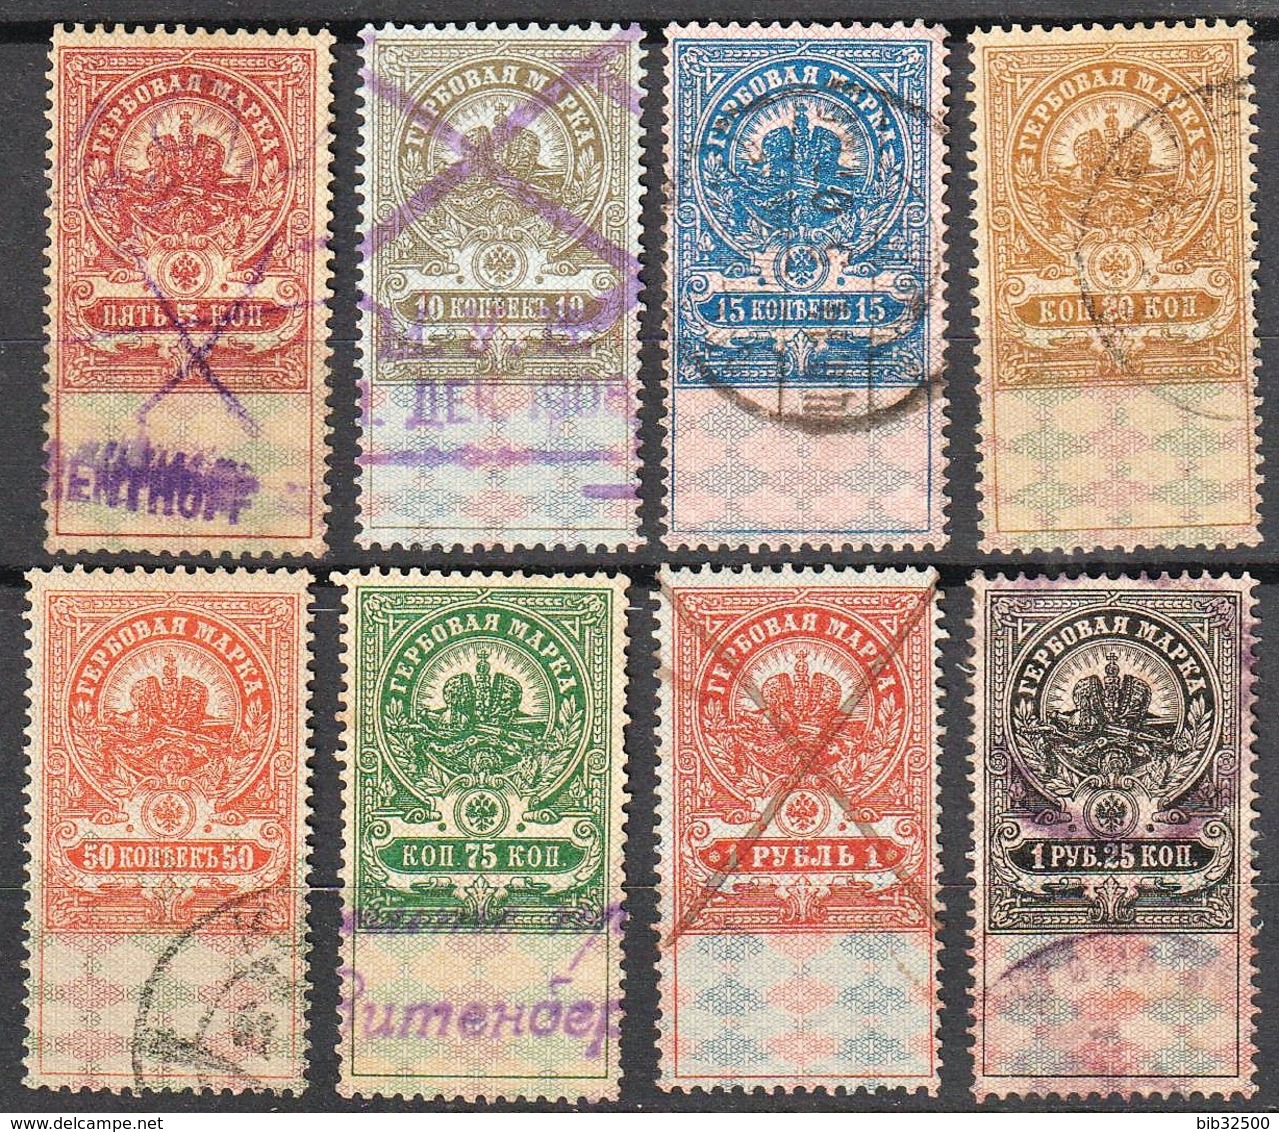 :-: Timbres Fiscaux Russes De L'Empire - 1905-1917 -  Cinquième émission  - N° 18 à 25 - Oblitérés - - Revenue Stamps